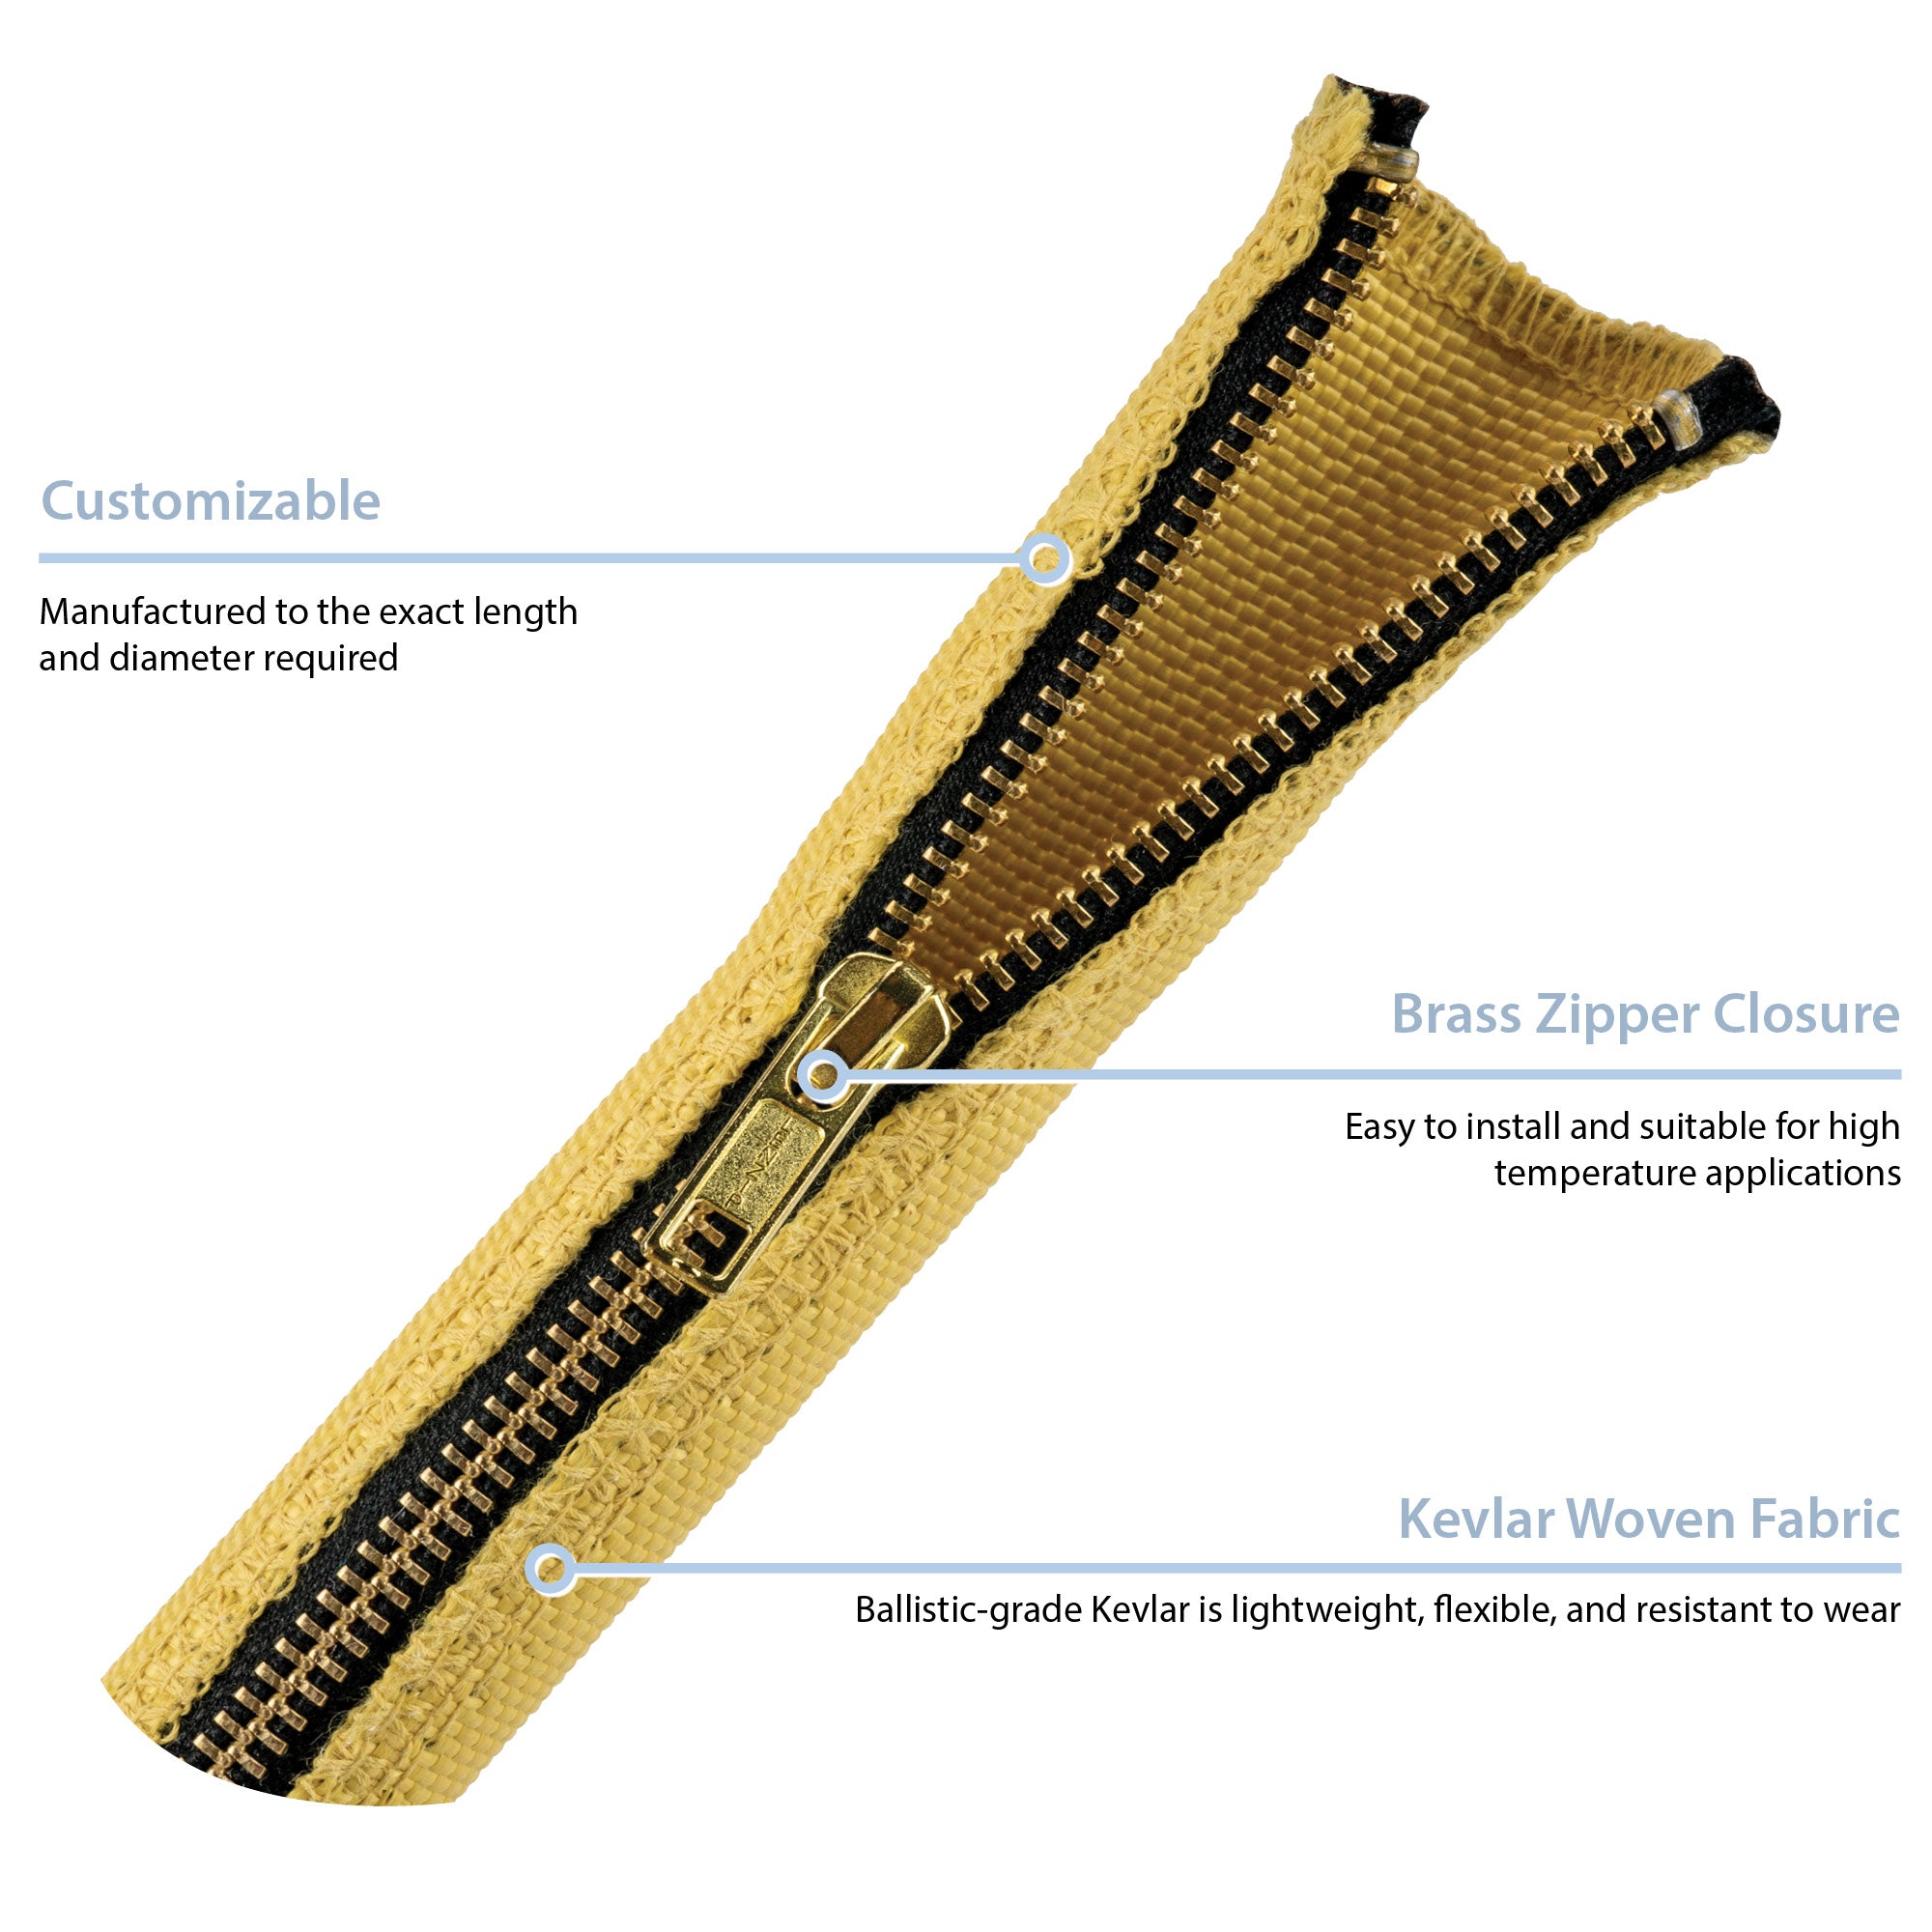 Zip-Wrap® (KWF-24) Kevlar Fabric Cable Bundling